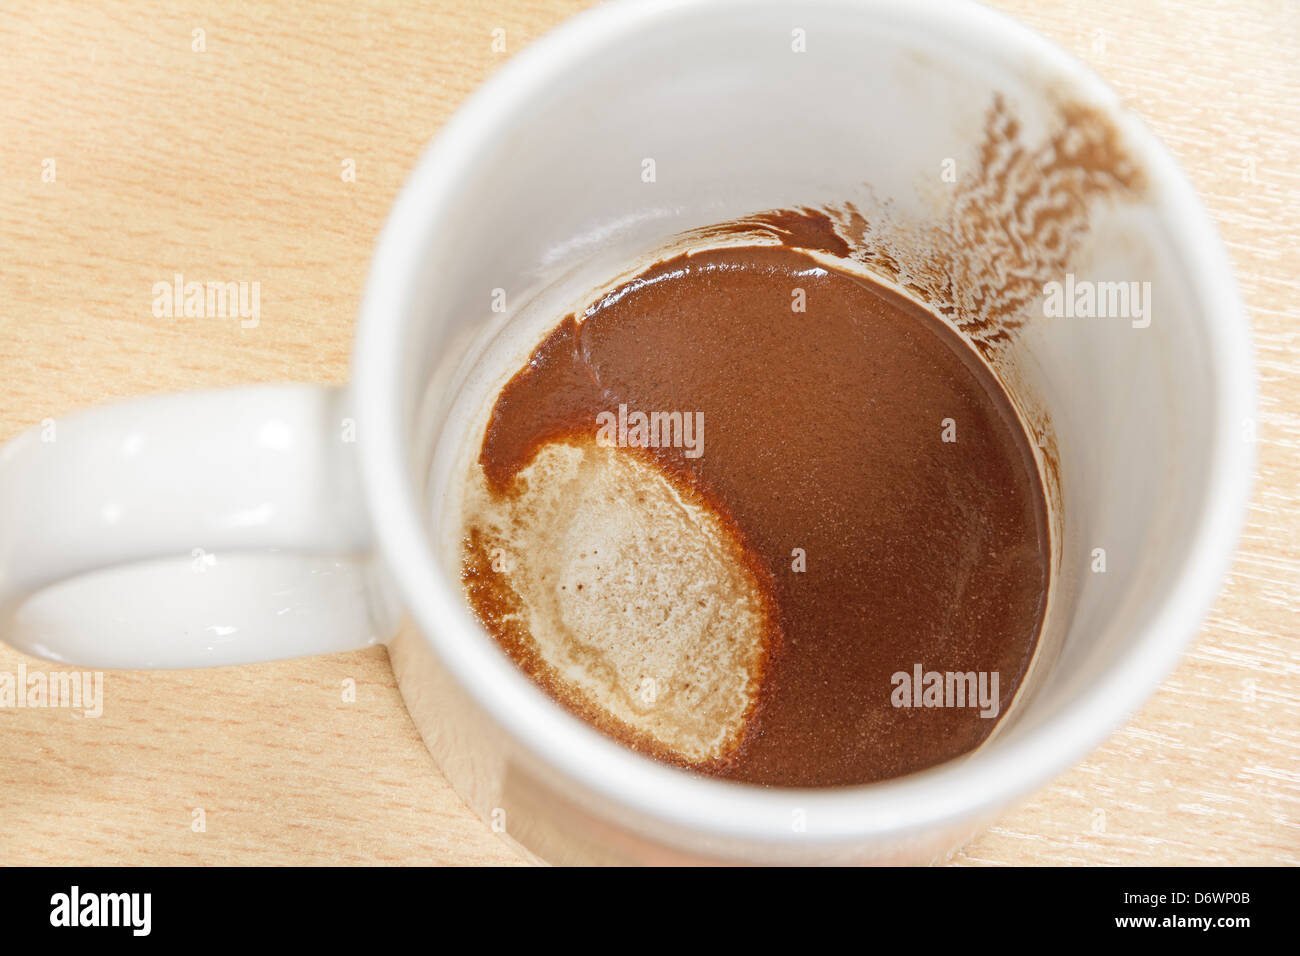 Tazza vuota di caffè, concetto circa il tentativo di prevedere una persona della futura via caffè forte Foto Stock